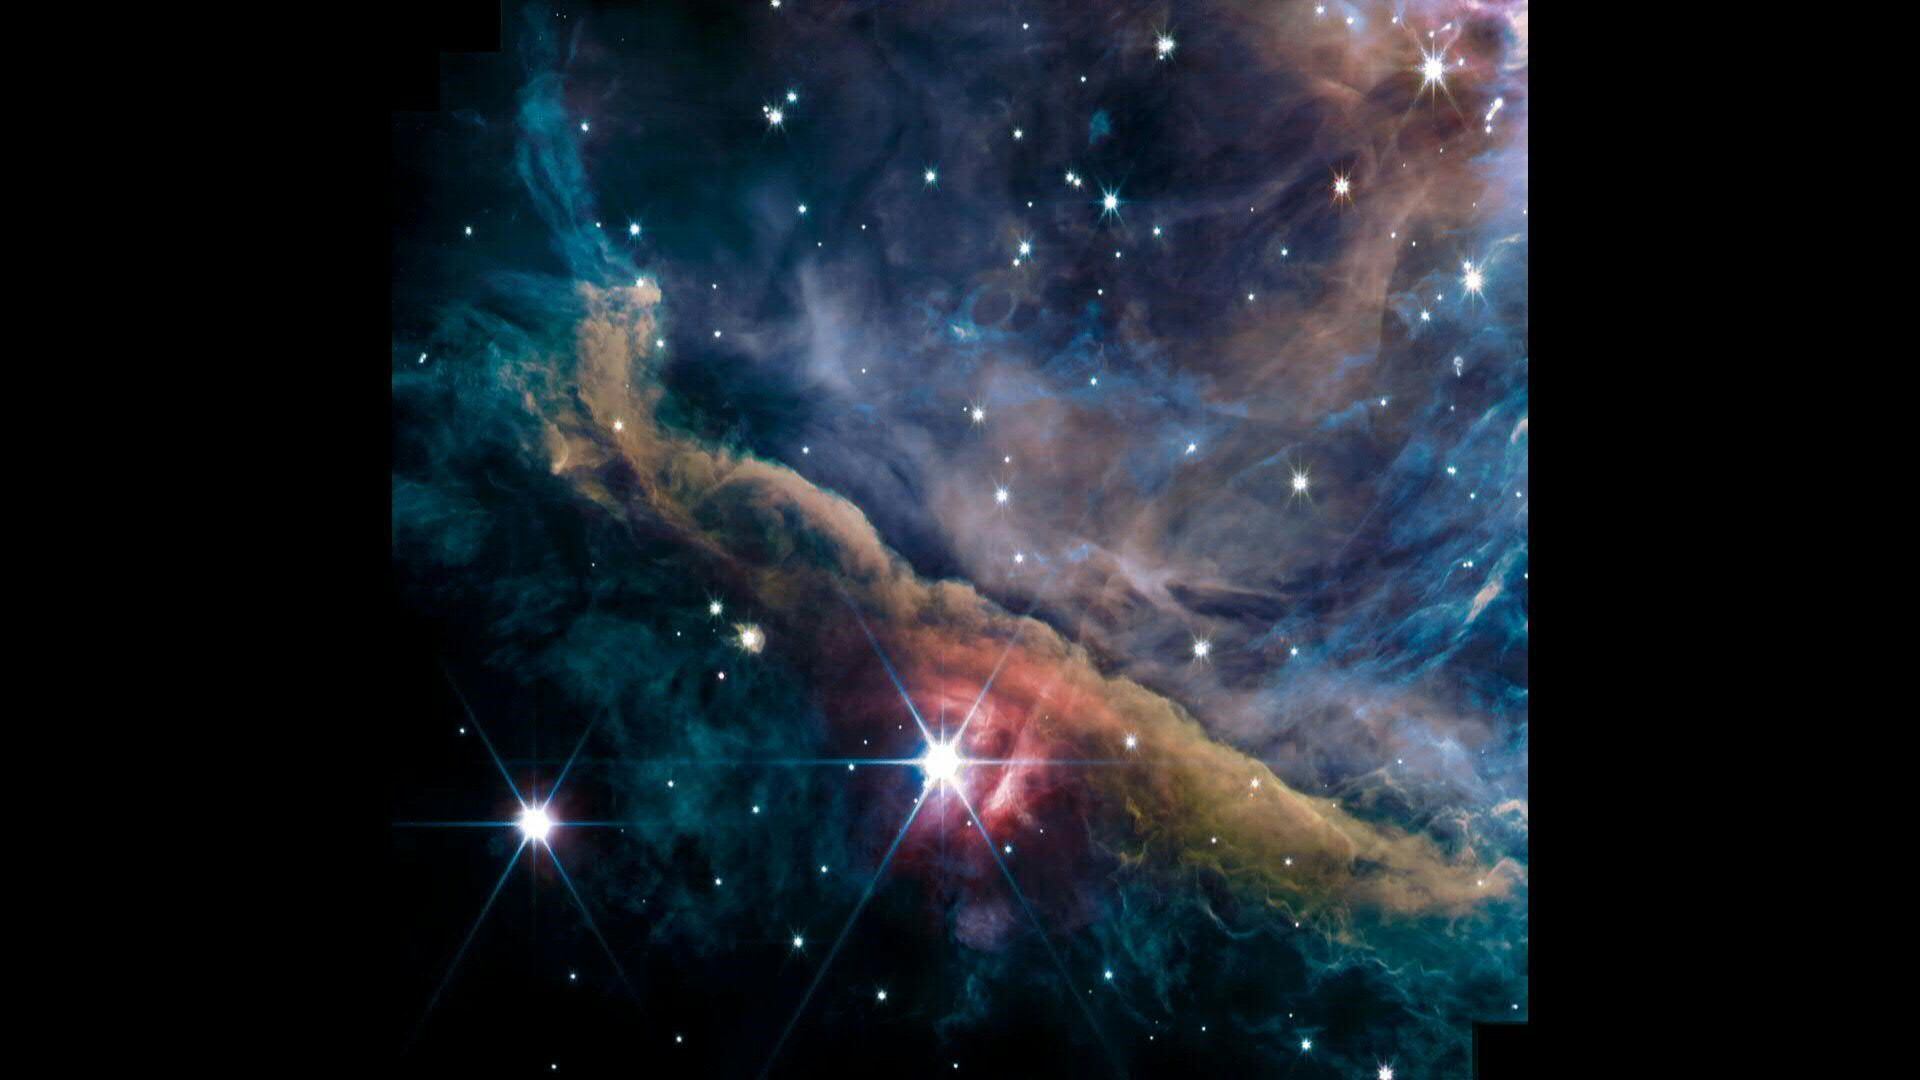 El telescopio espacial James Webb capturó las primeras imágenes de la nebulosa de Orión, que dejaron a los astrónomos "impresionados", reveló el lunes un equipo de investigación internacional. (NASA)